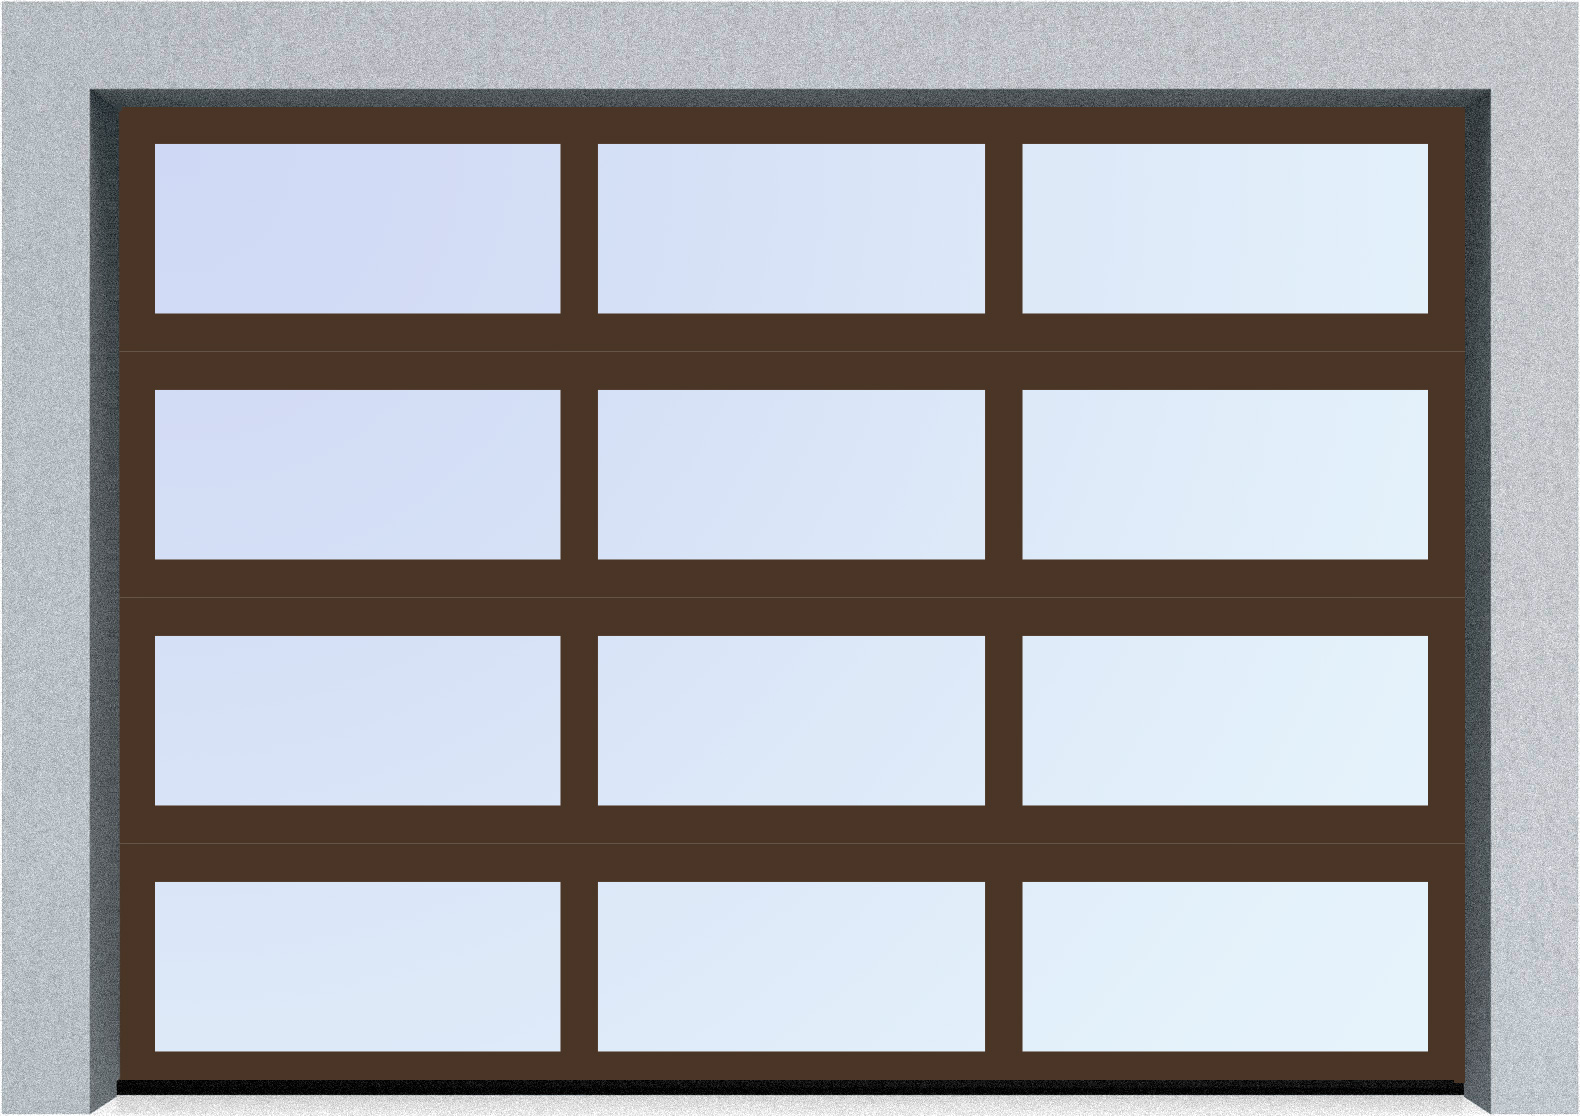  Секционные панорамные ворота серии AluTrend (АЛП) 5250х4500 нижняя панель стандартные цвета, фото 6 